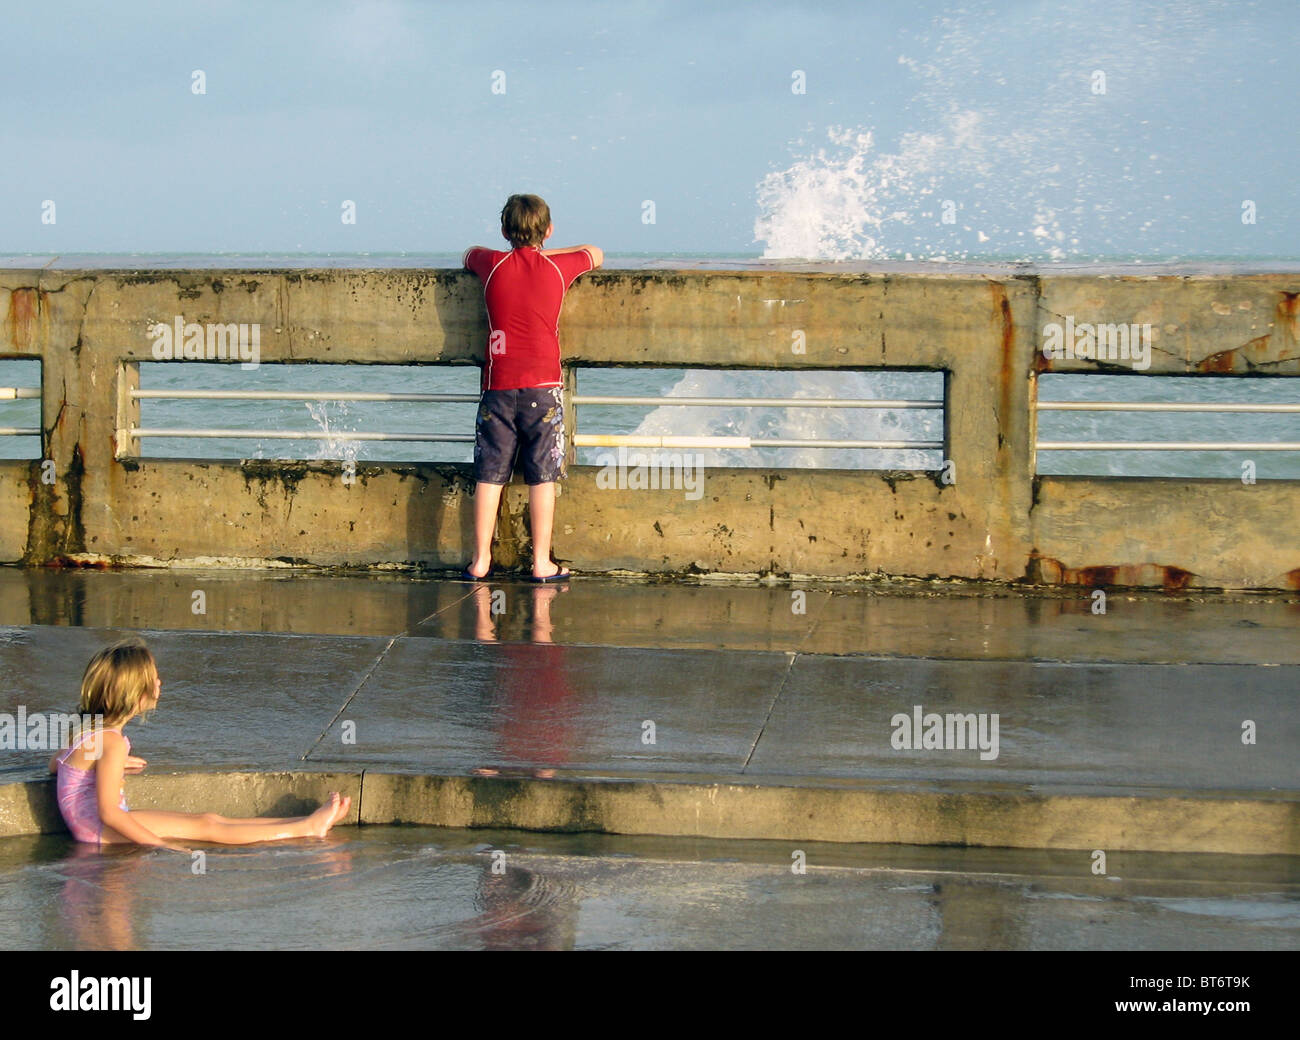 Un garçon et une fille sur un quai, avec des projections d'eau, rappelant une peinture de Norman Rockwell. Banque D'Images